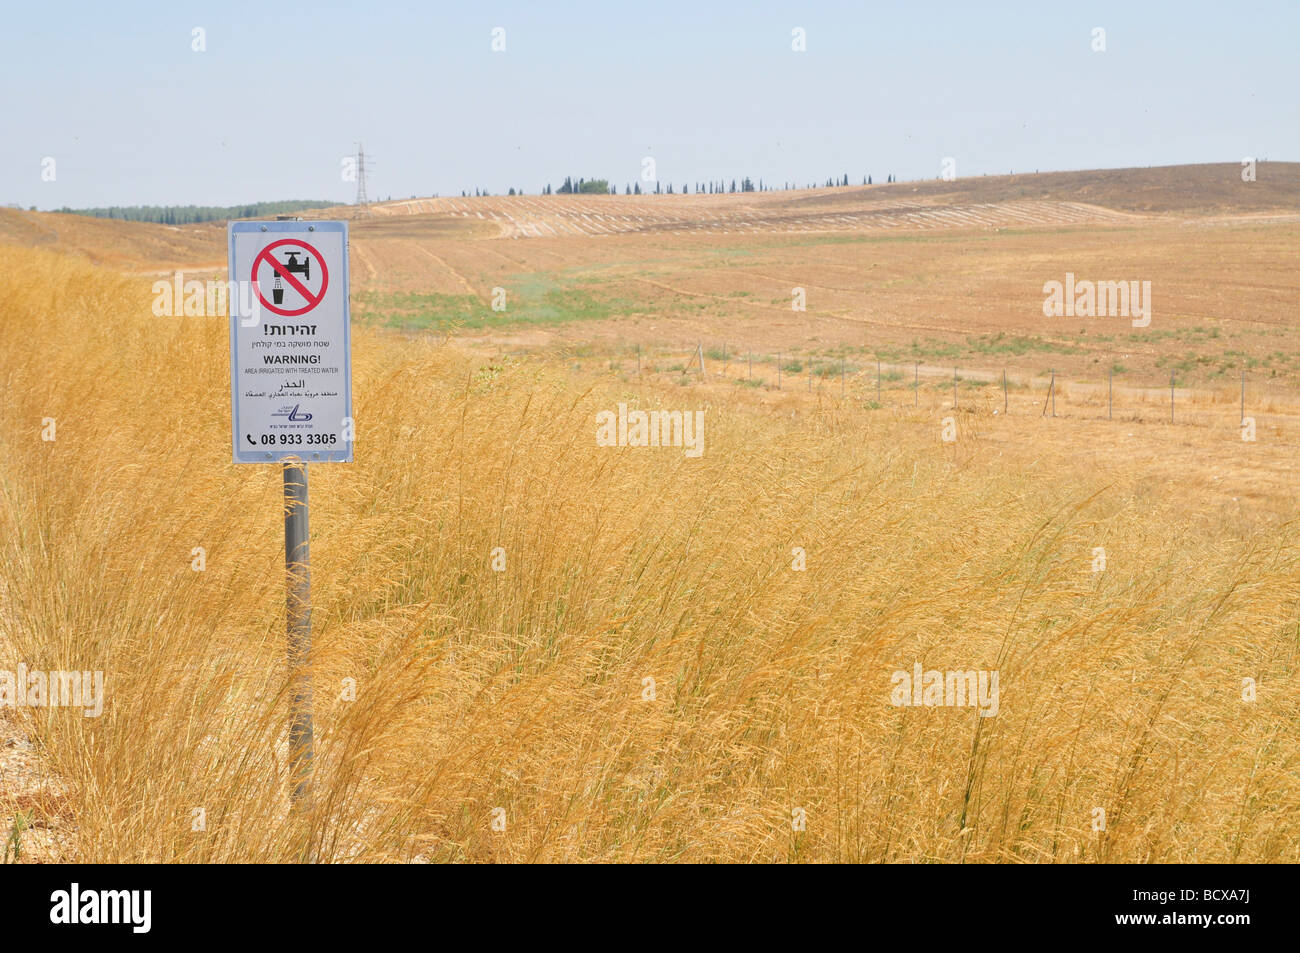 Israele Highway 6 un segnale di avvertimento in Inglese Ebraico e Arabo la lettura delle superfici irrigate con acqua trattata 20 Luglio 2009 Foto Stock